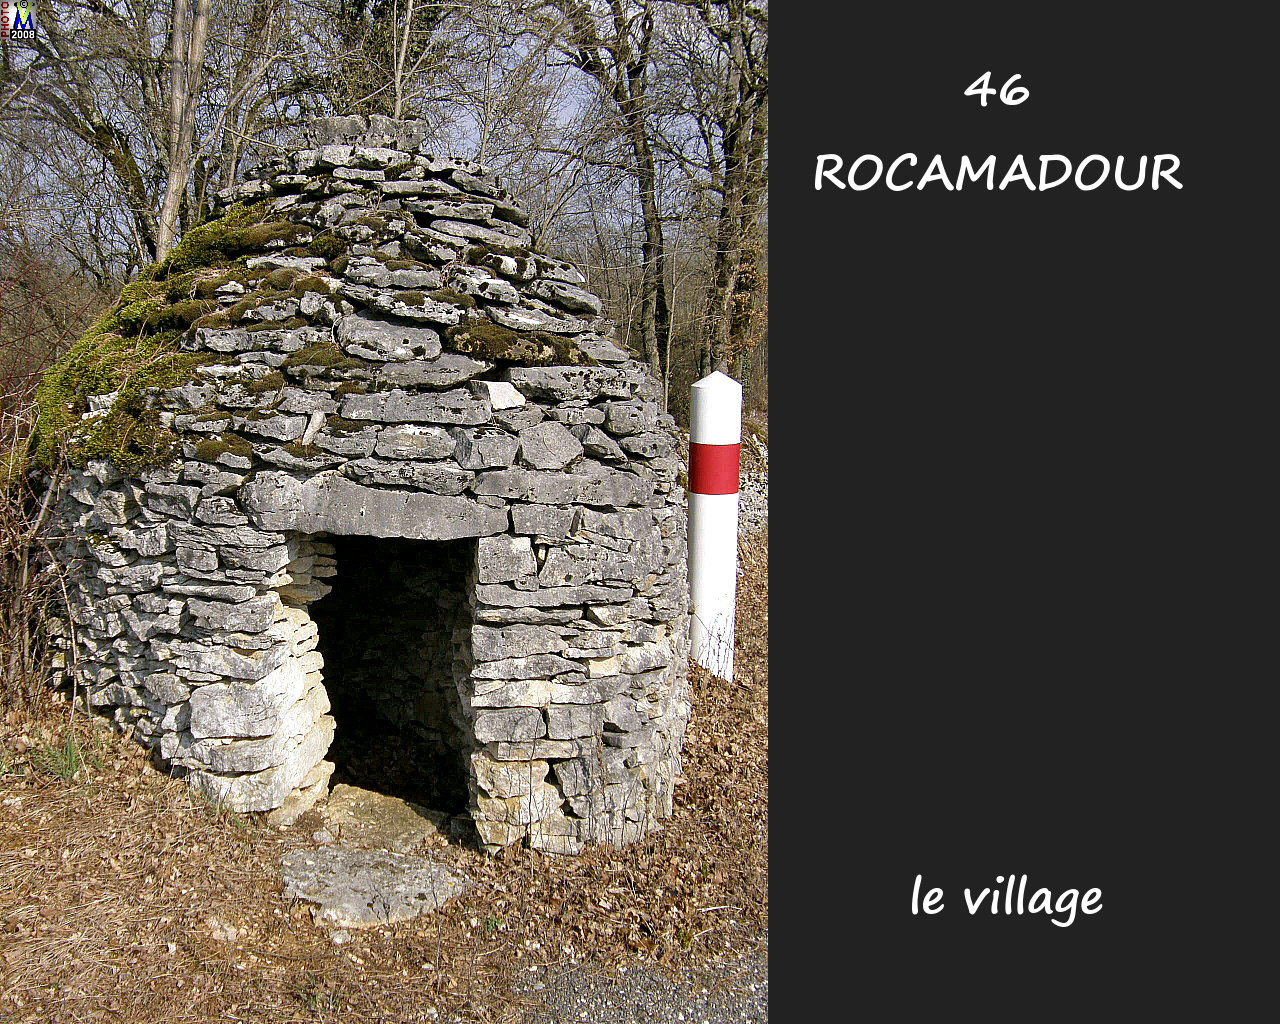 46ROCAMADOUR_village_300.jpg